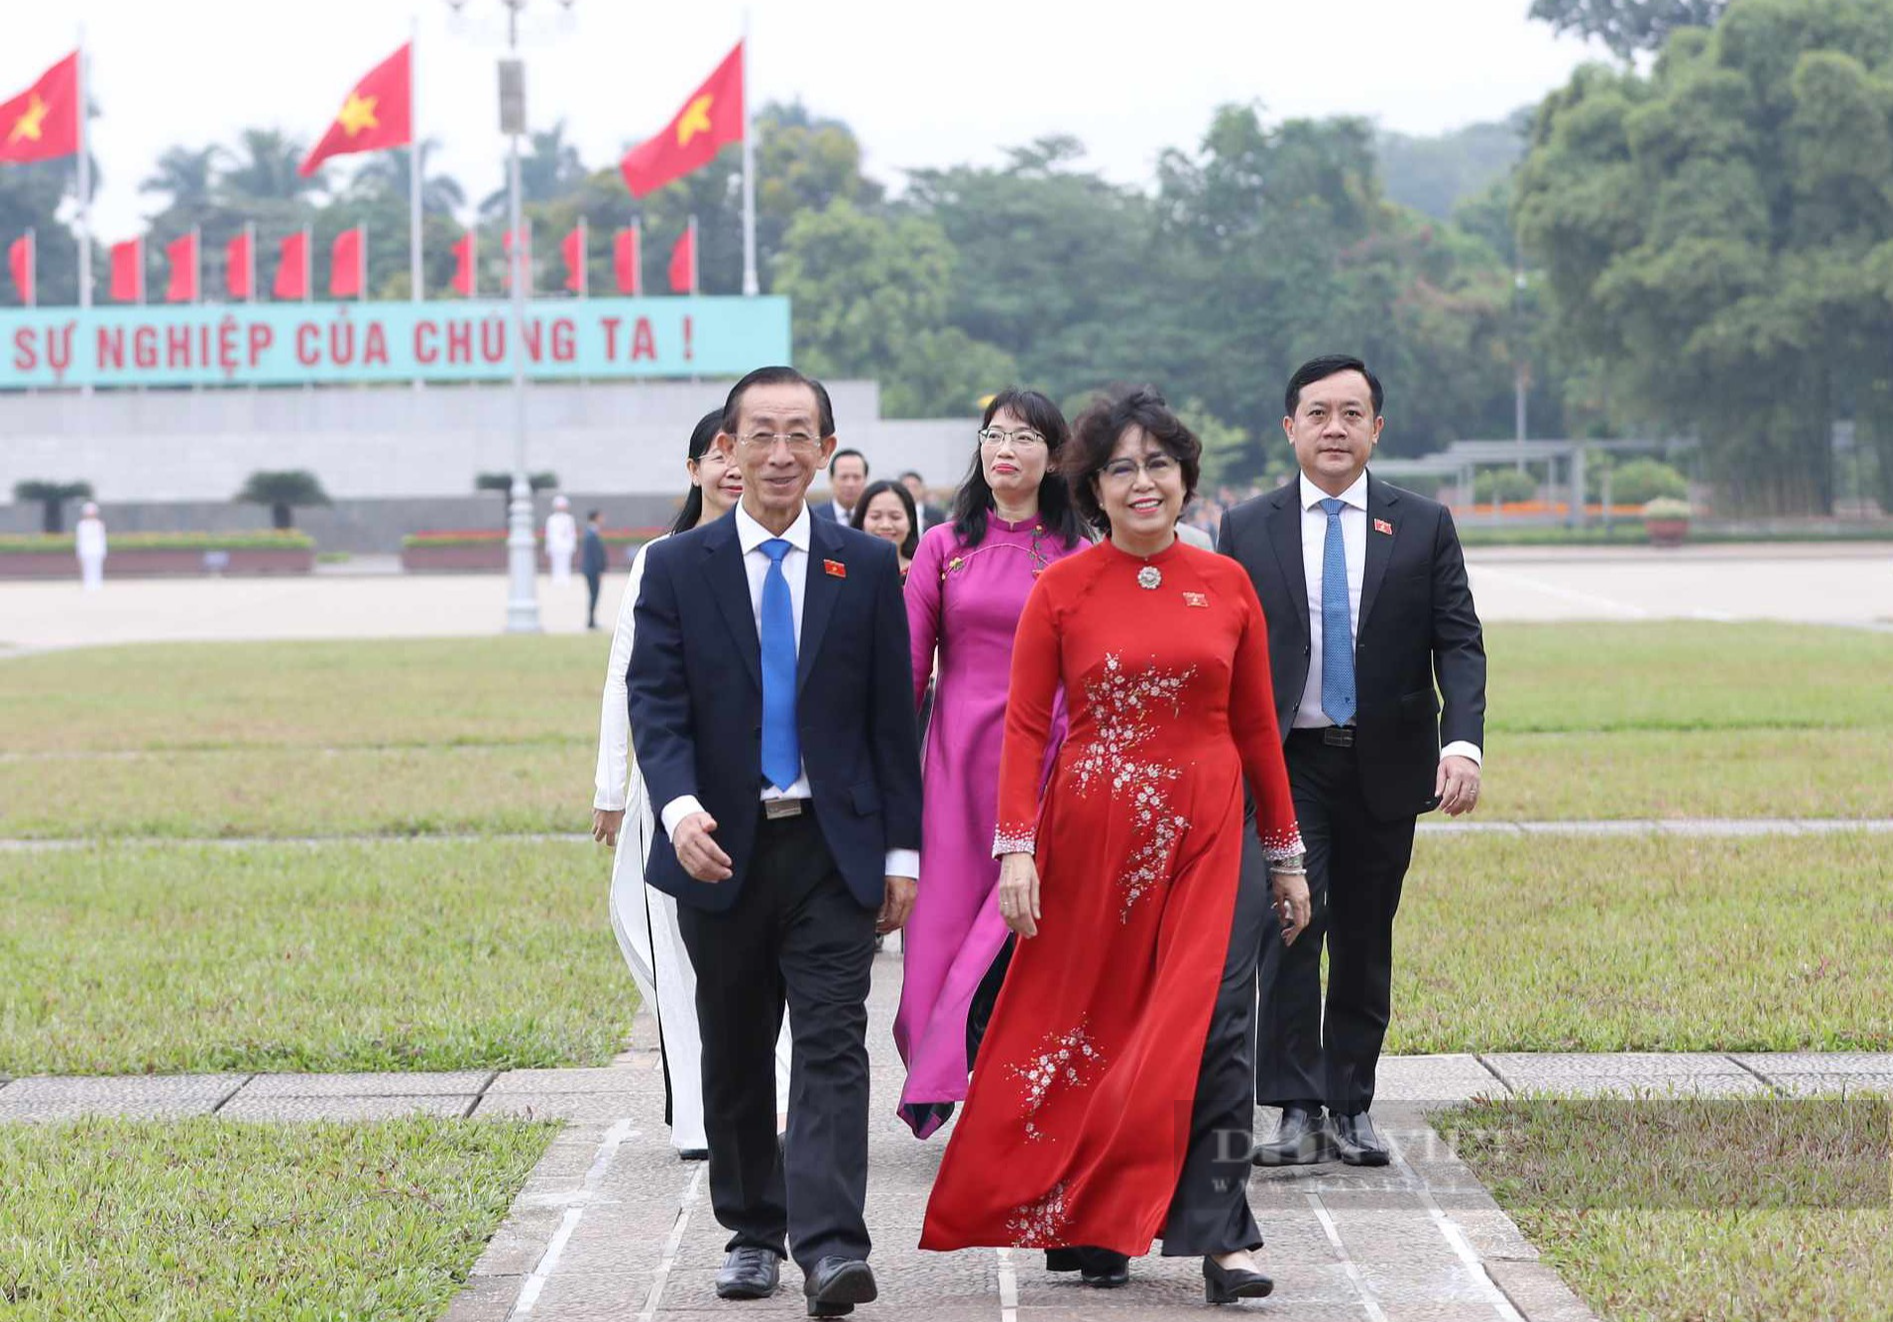 Lãnh đạo Đảng, Nhà nước viếng Chủ tịch Hồ Chí Minh trước giờ khai mạc Kỳ 6 Quốc hội khóa XV - Ảnh 7.